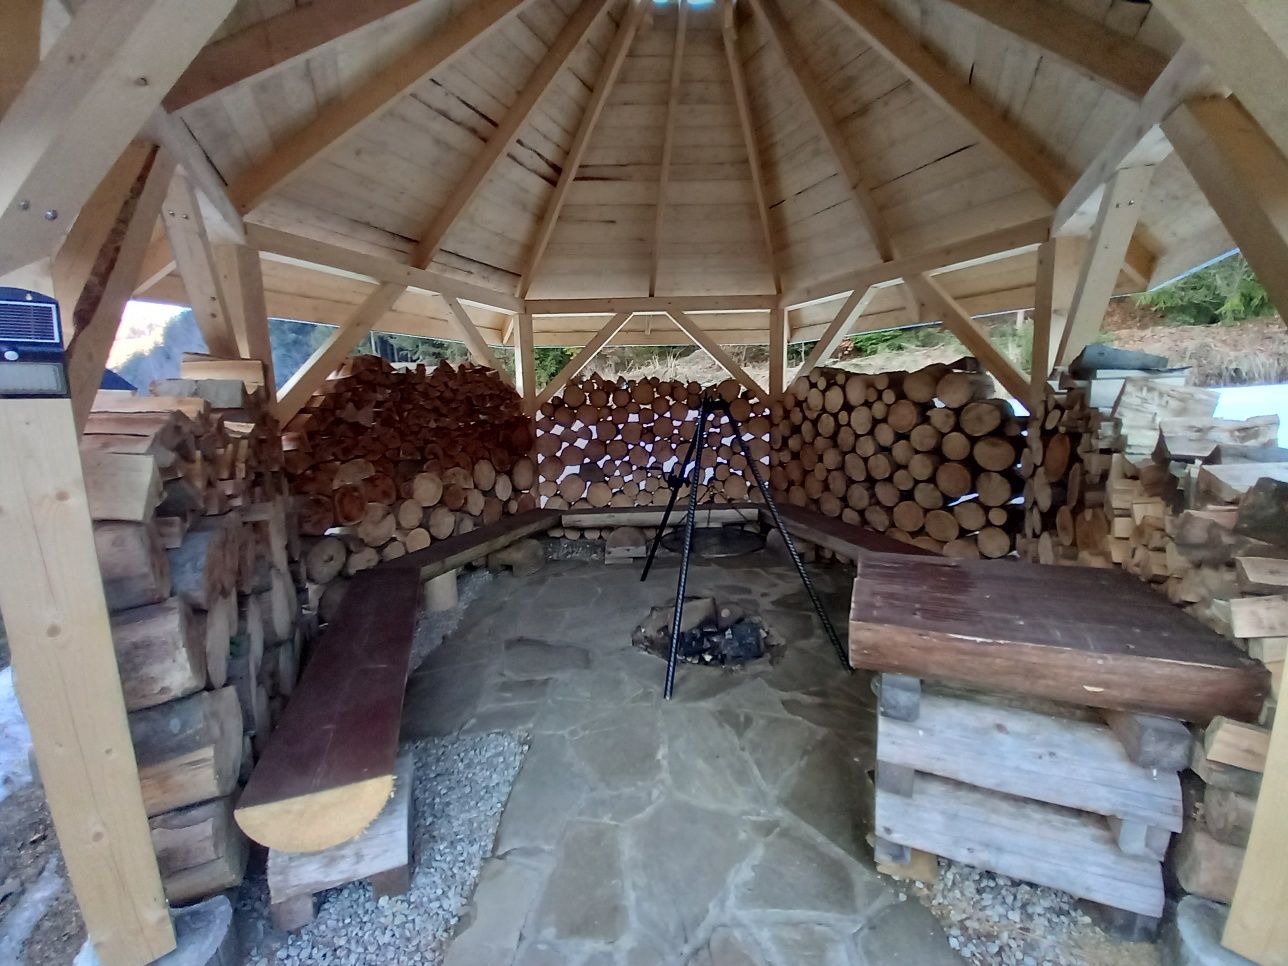 Domek do wynajęcia z balią I sauną Obidowa Podhale Zakopane